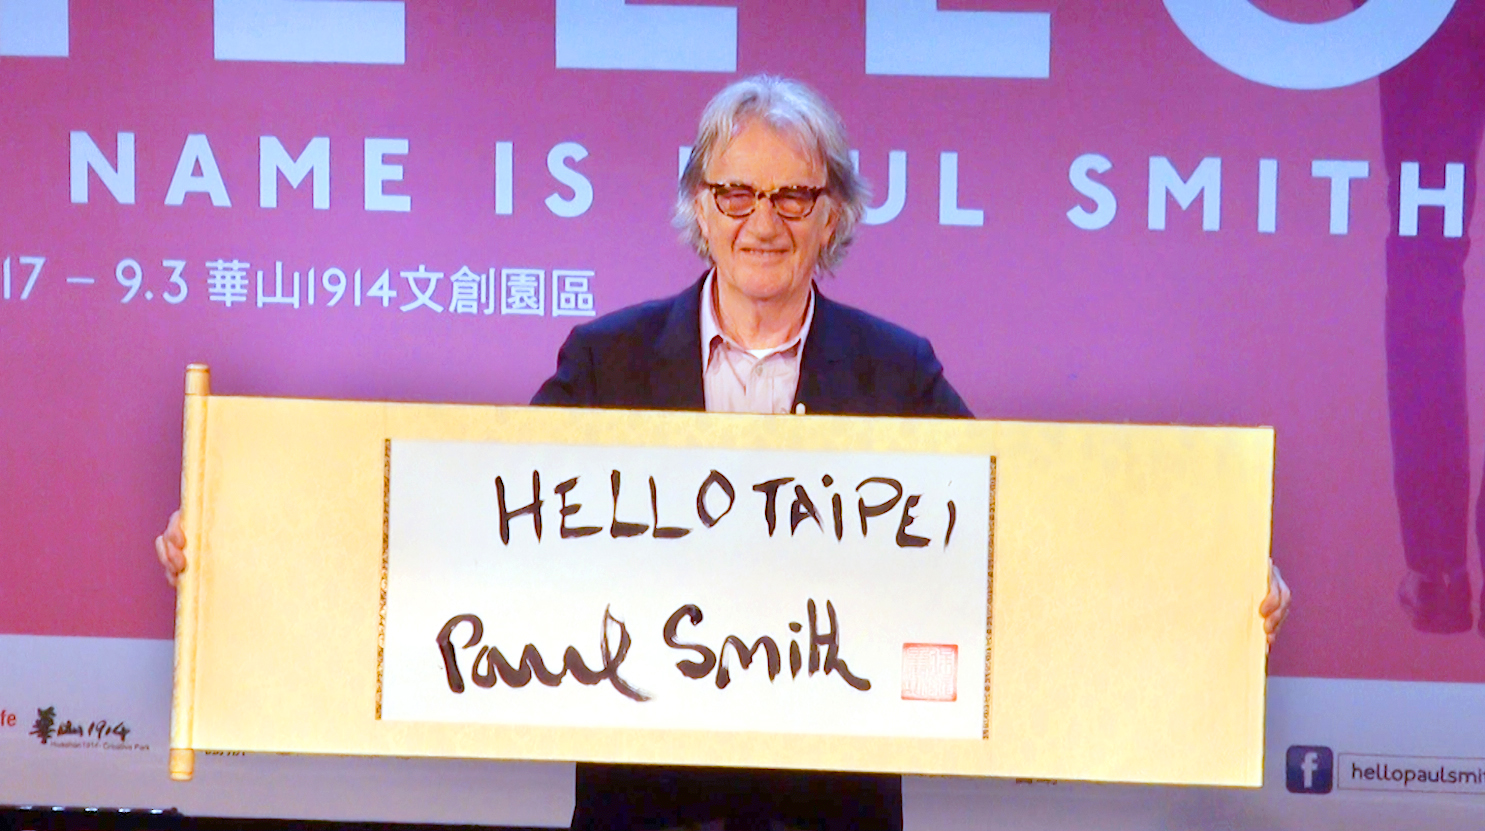 Hello_Taipei！英國時尚設計師Paul_Smith首度訪台超風趣_不改幽默本色推展覽31_copy.jpg